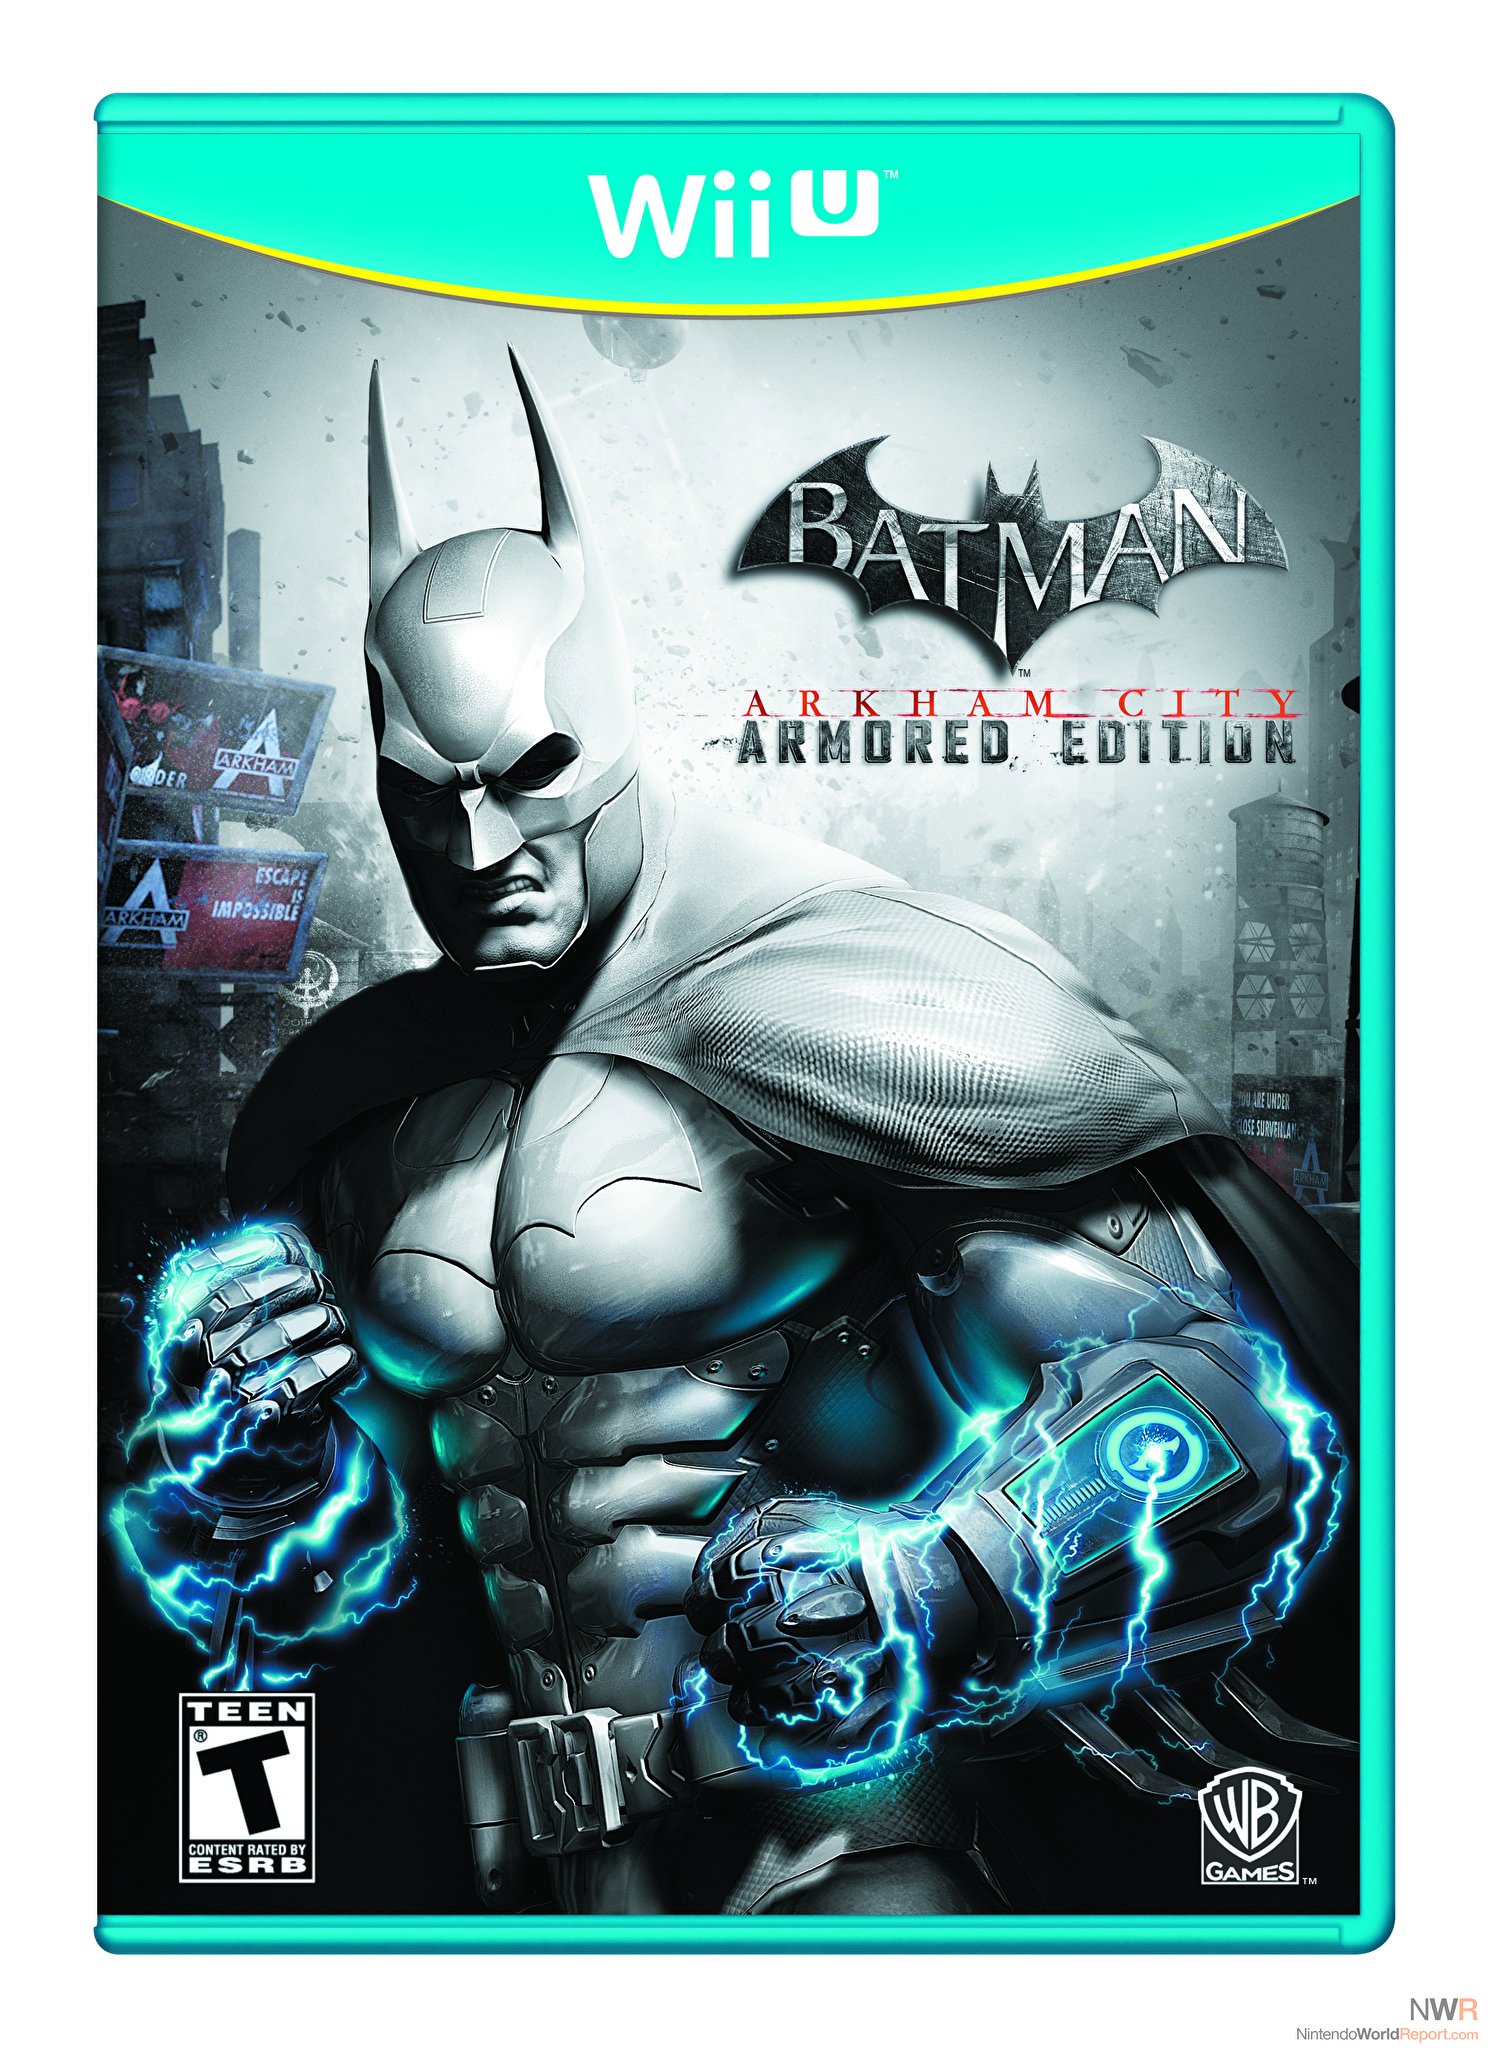 Batman: Arkham City Armored Edition Review - Review - Nintendo World Report